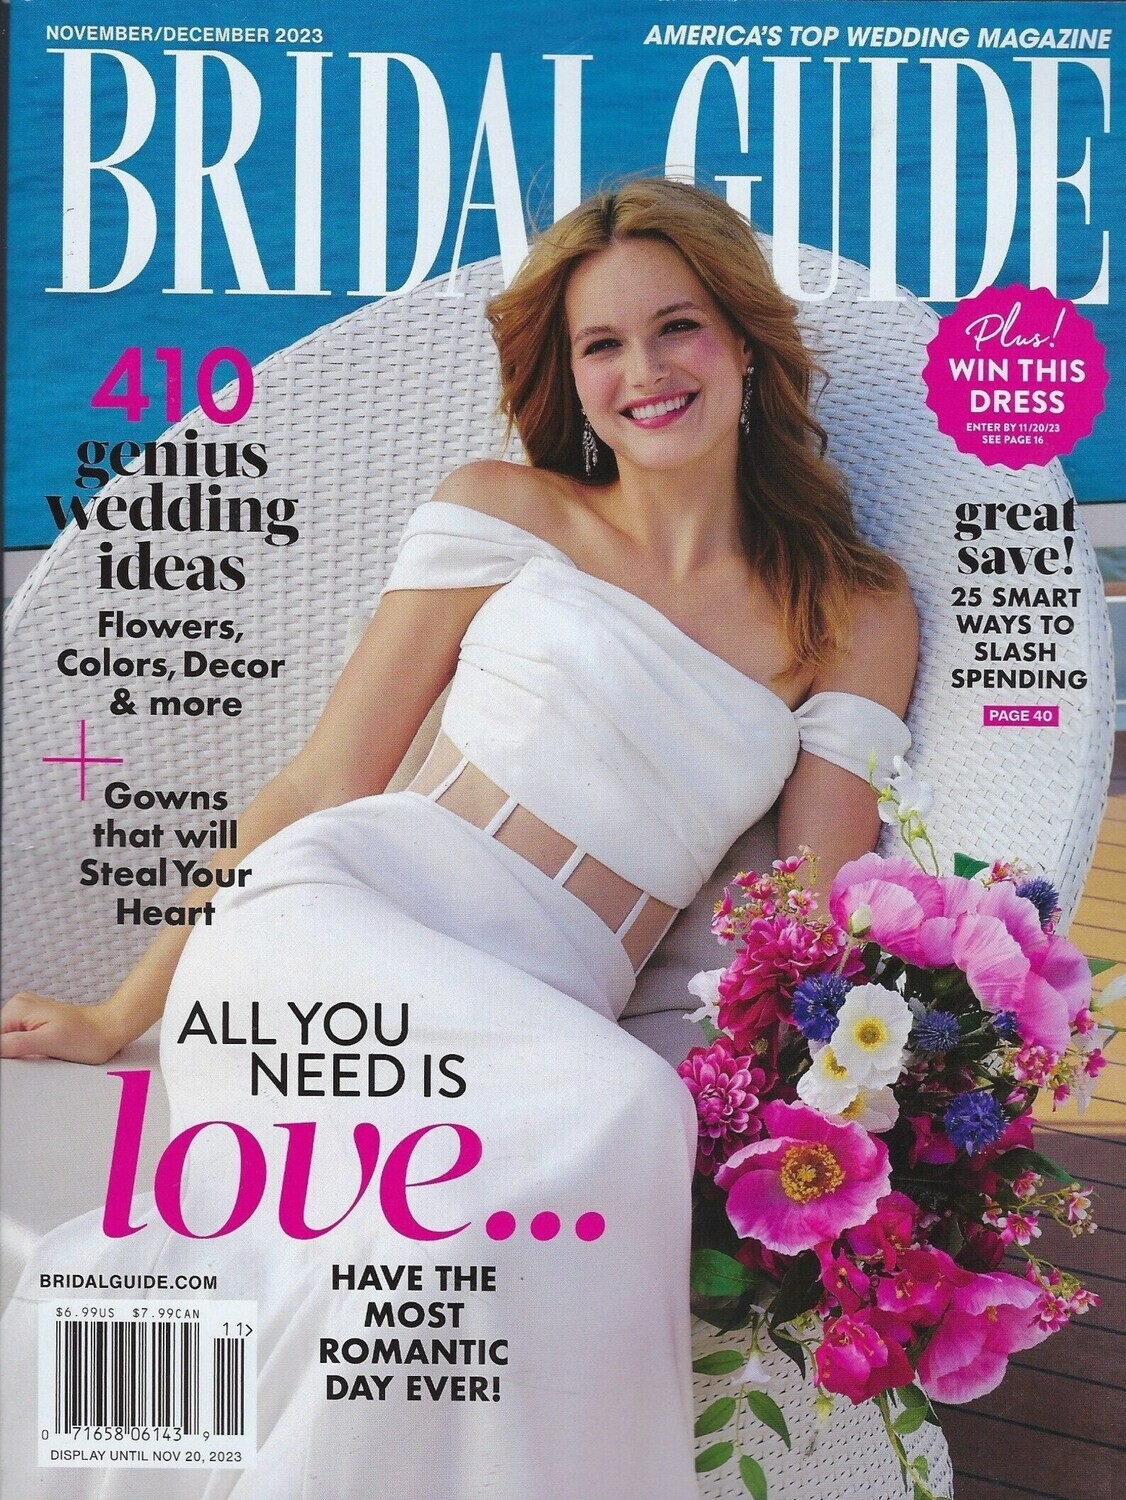 Bridal Guide Magazine ( 410 Genius Ideas ) Nov/Dec 2023 - America's Top Wedding Magazine